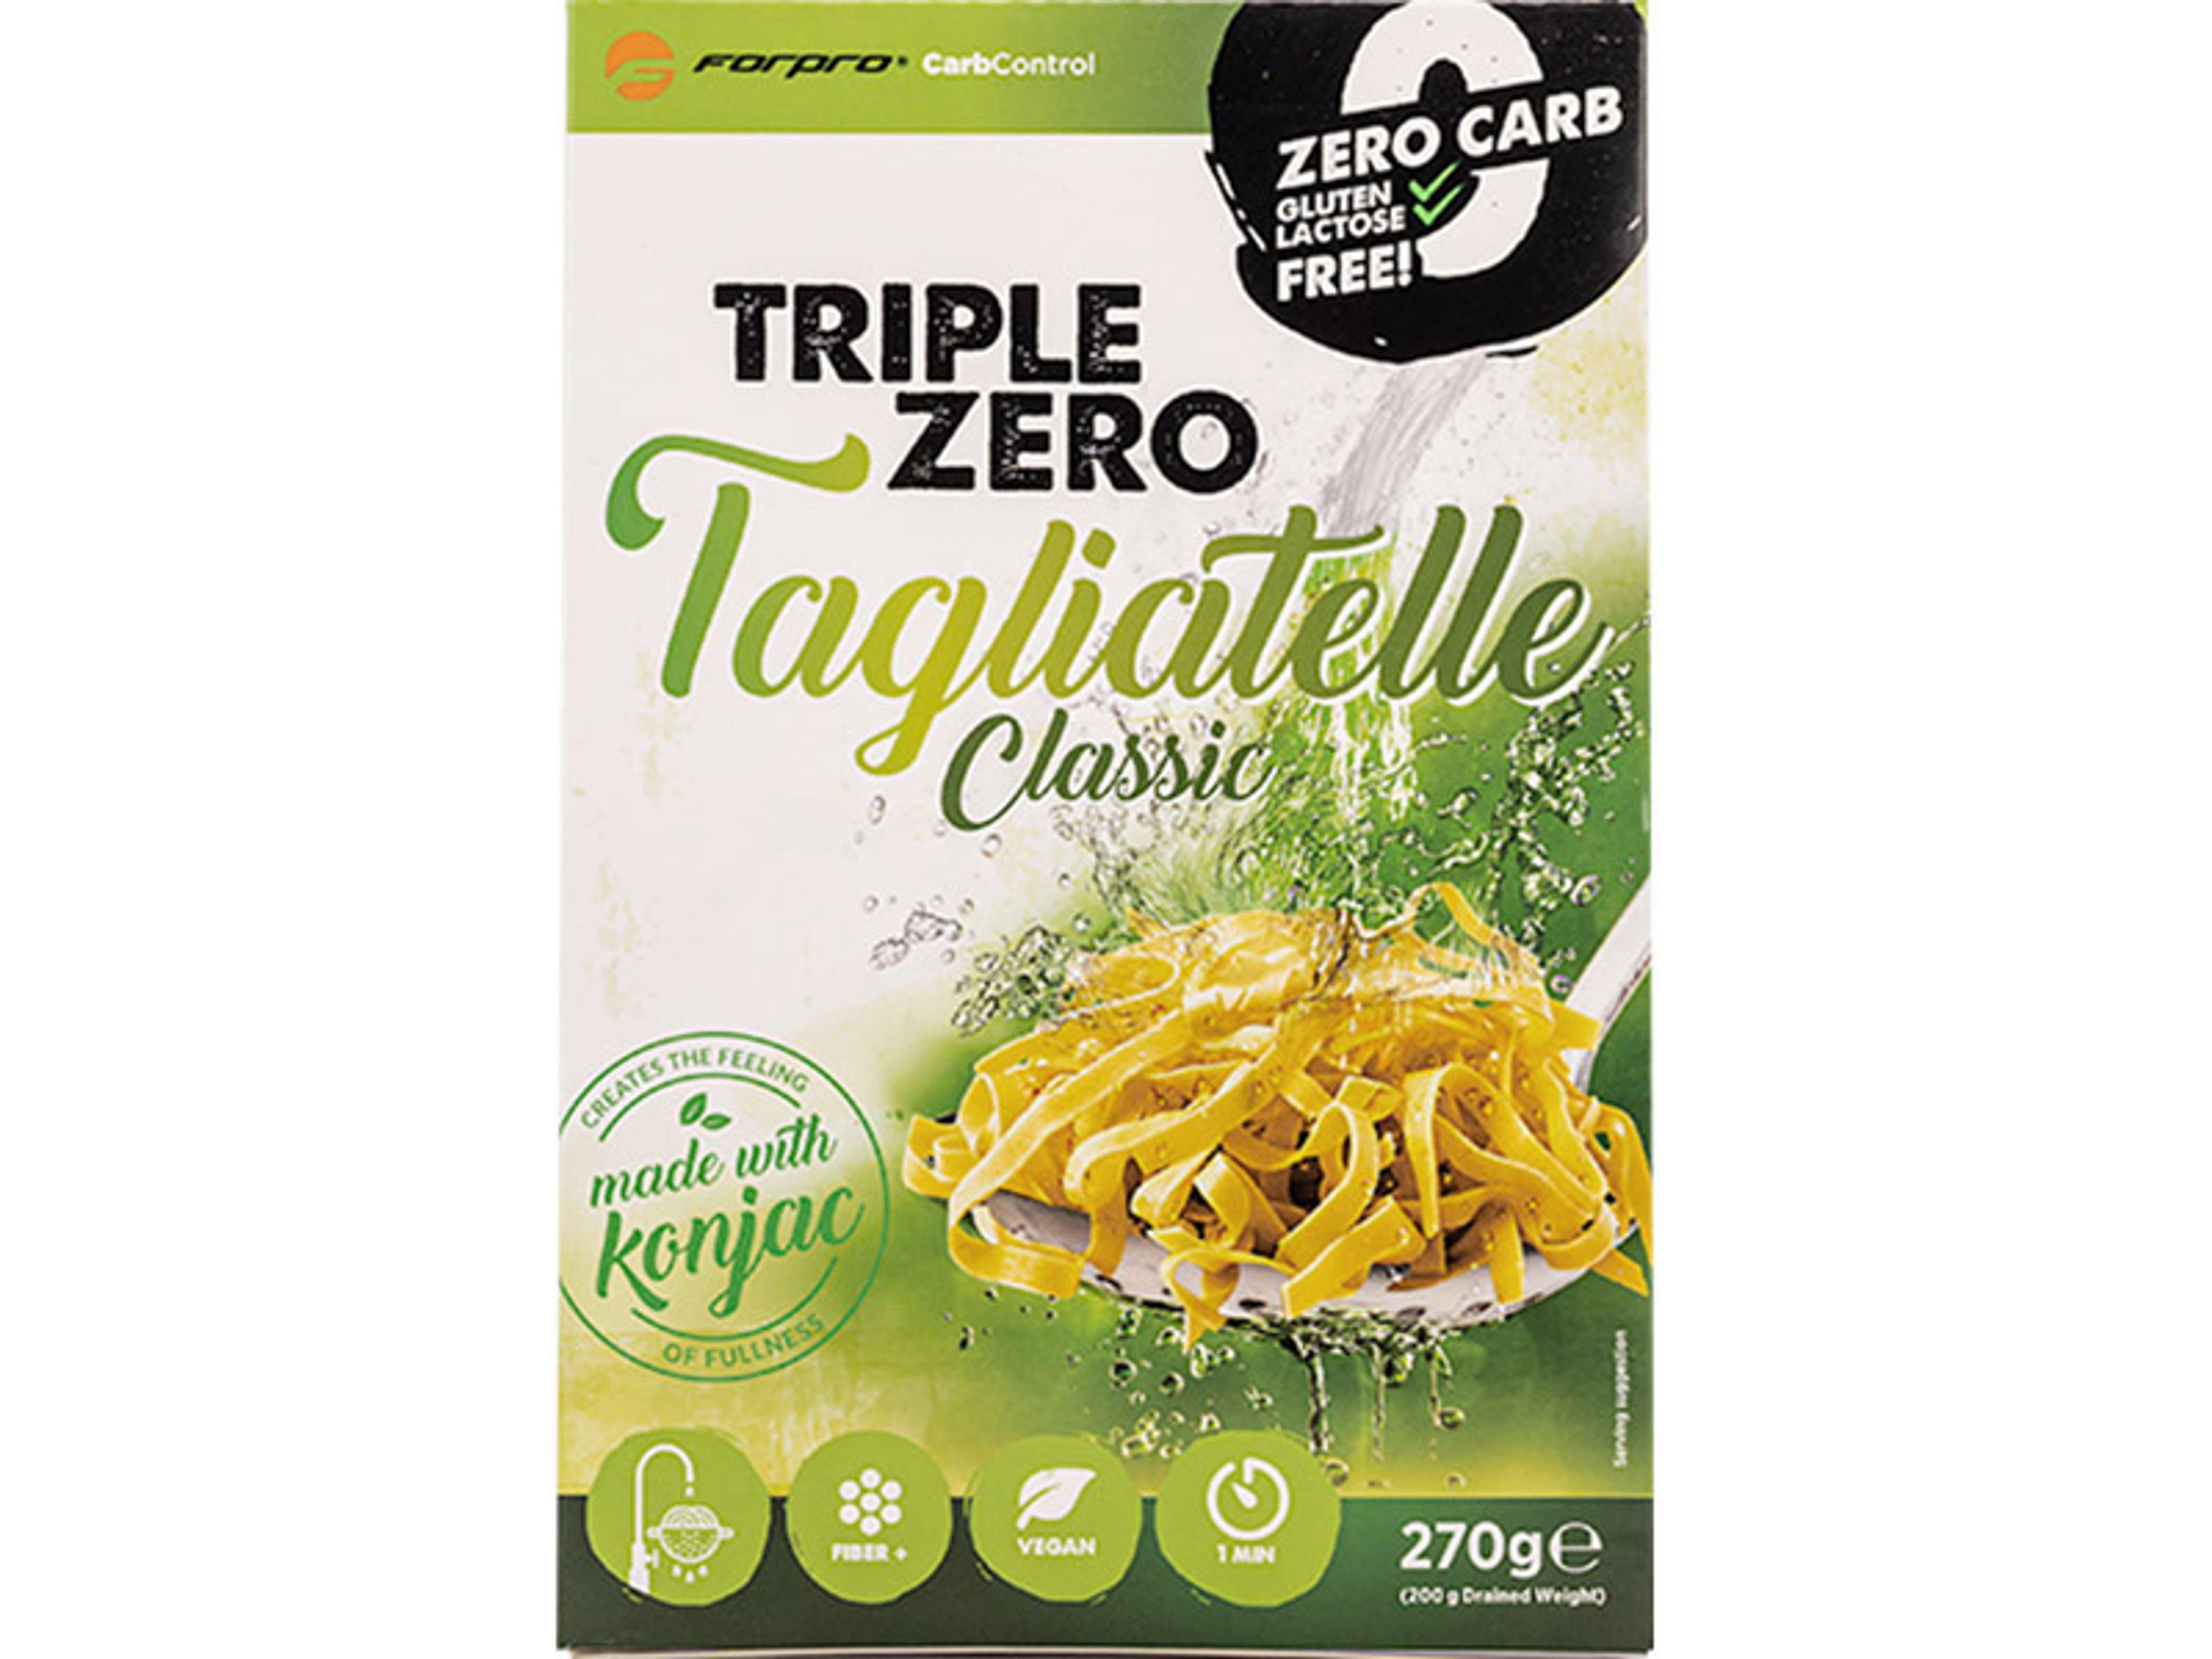 Forpro Carb Control Triple Zero Pasta Classic Tagliatelle - 270 g-1